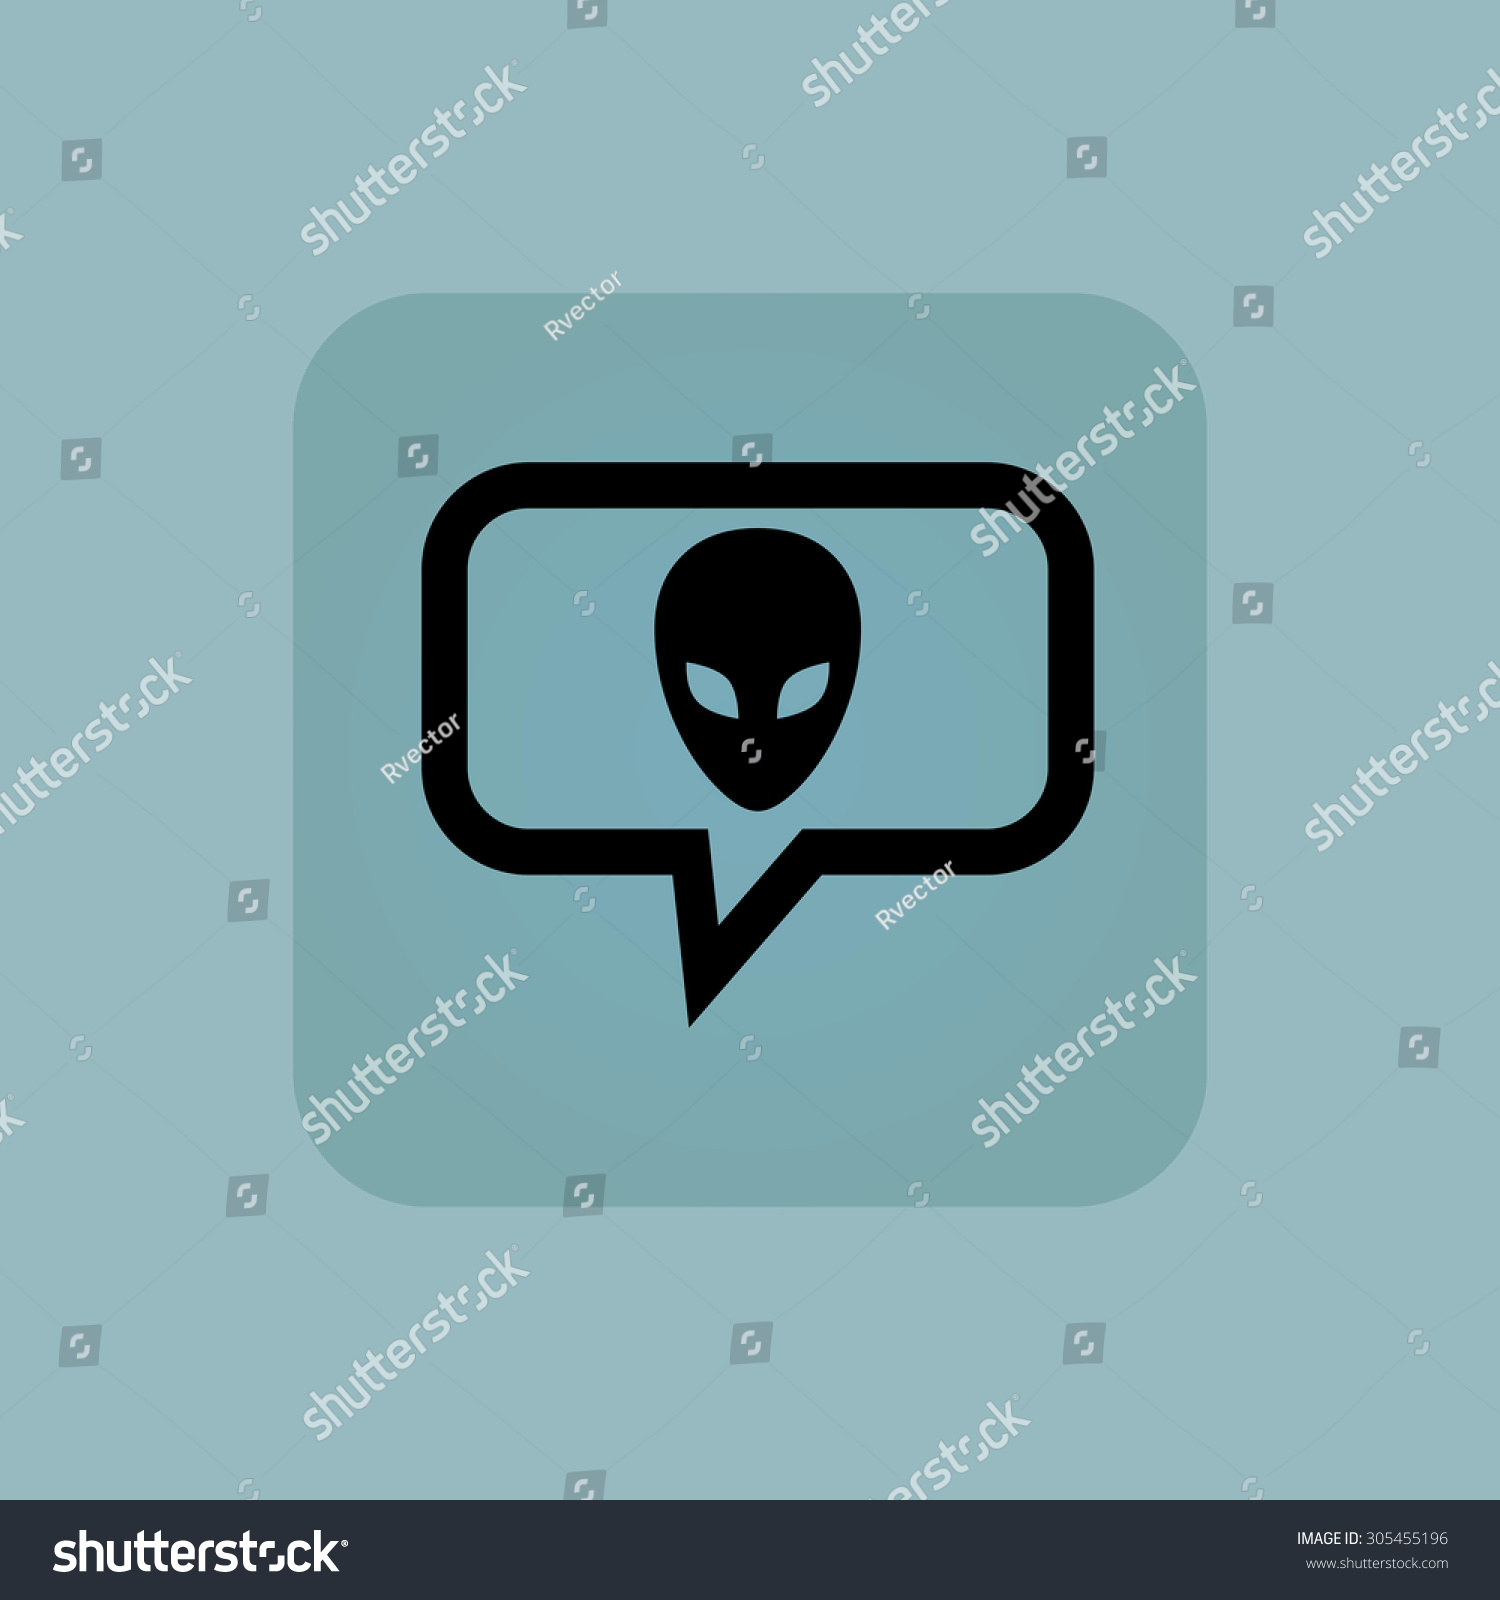 Alien face chat